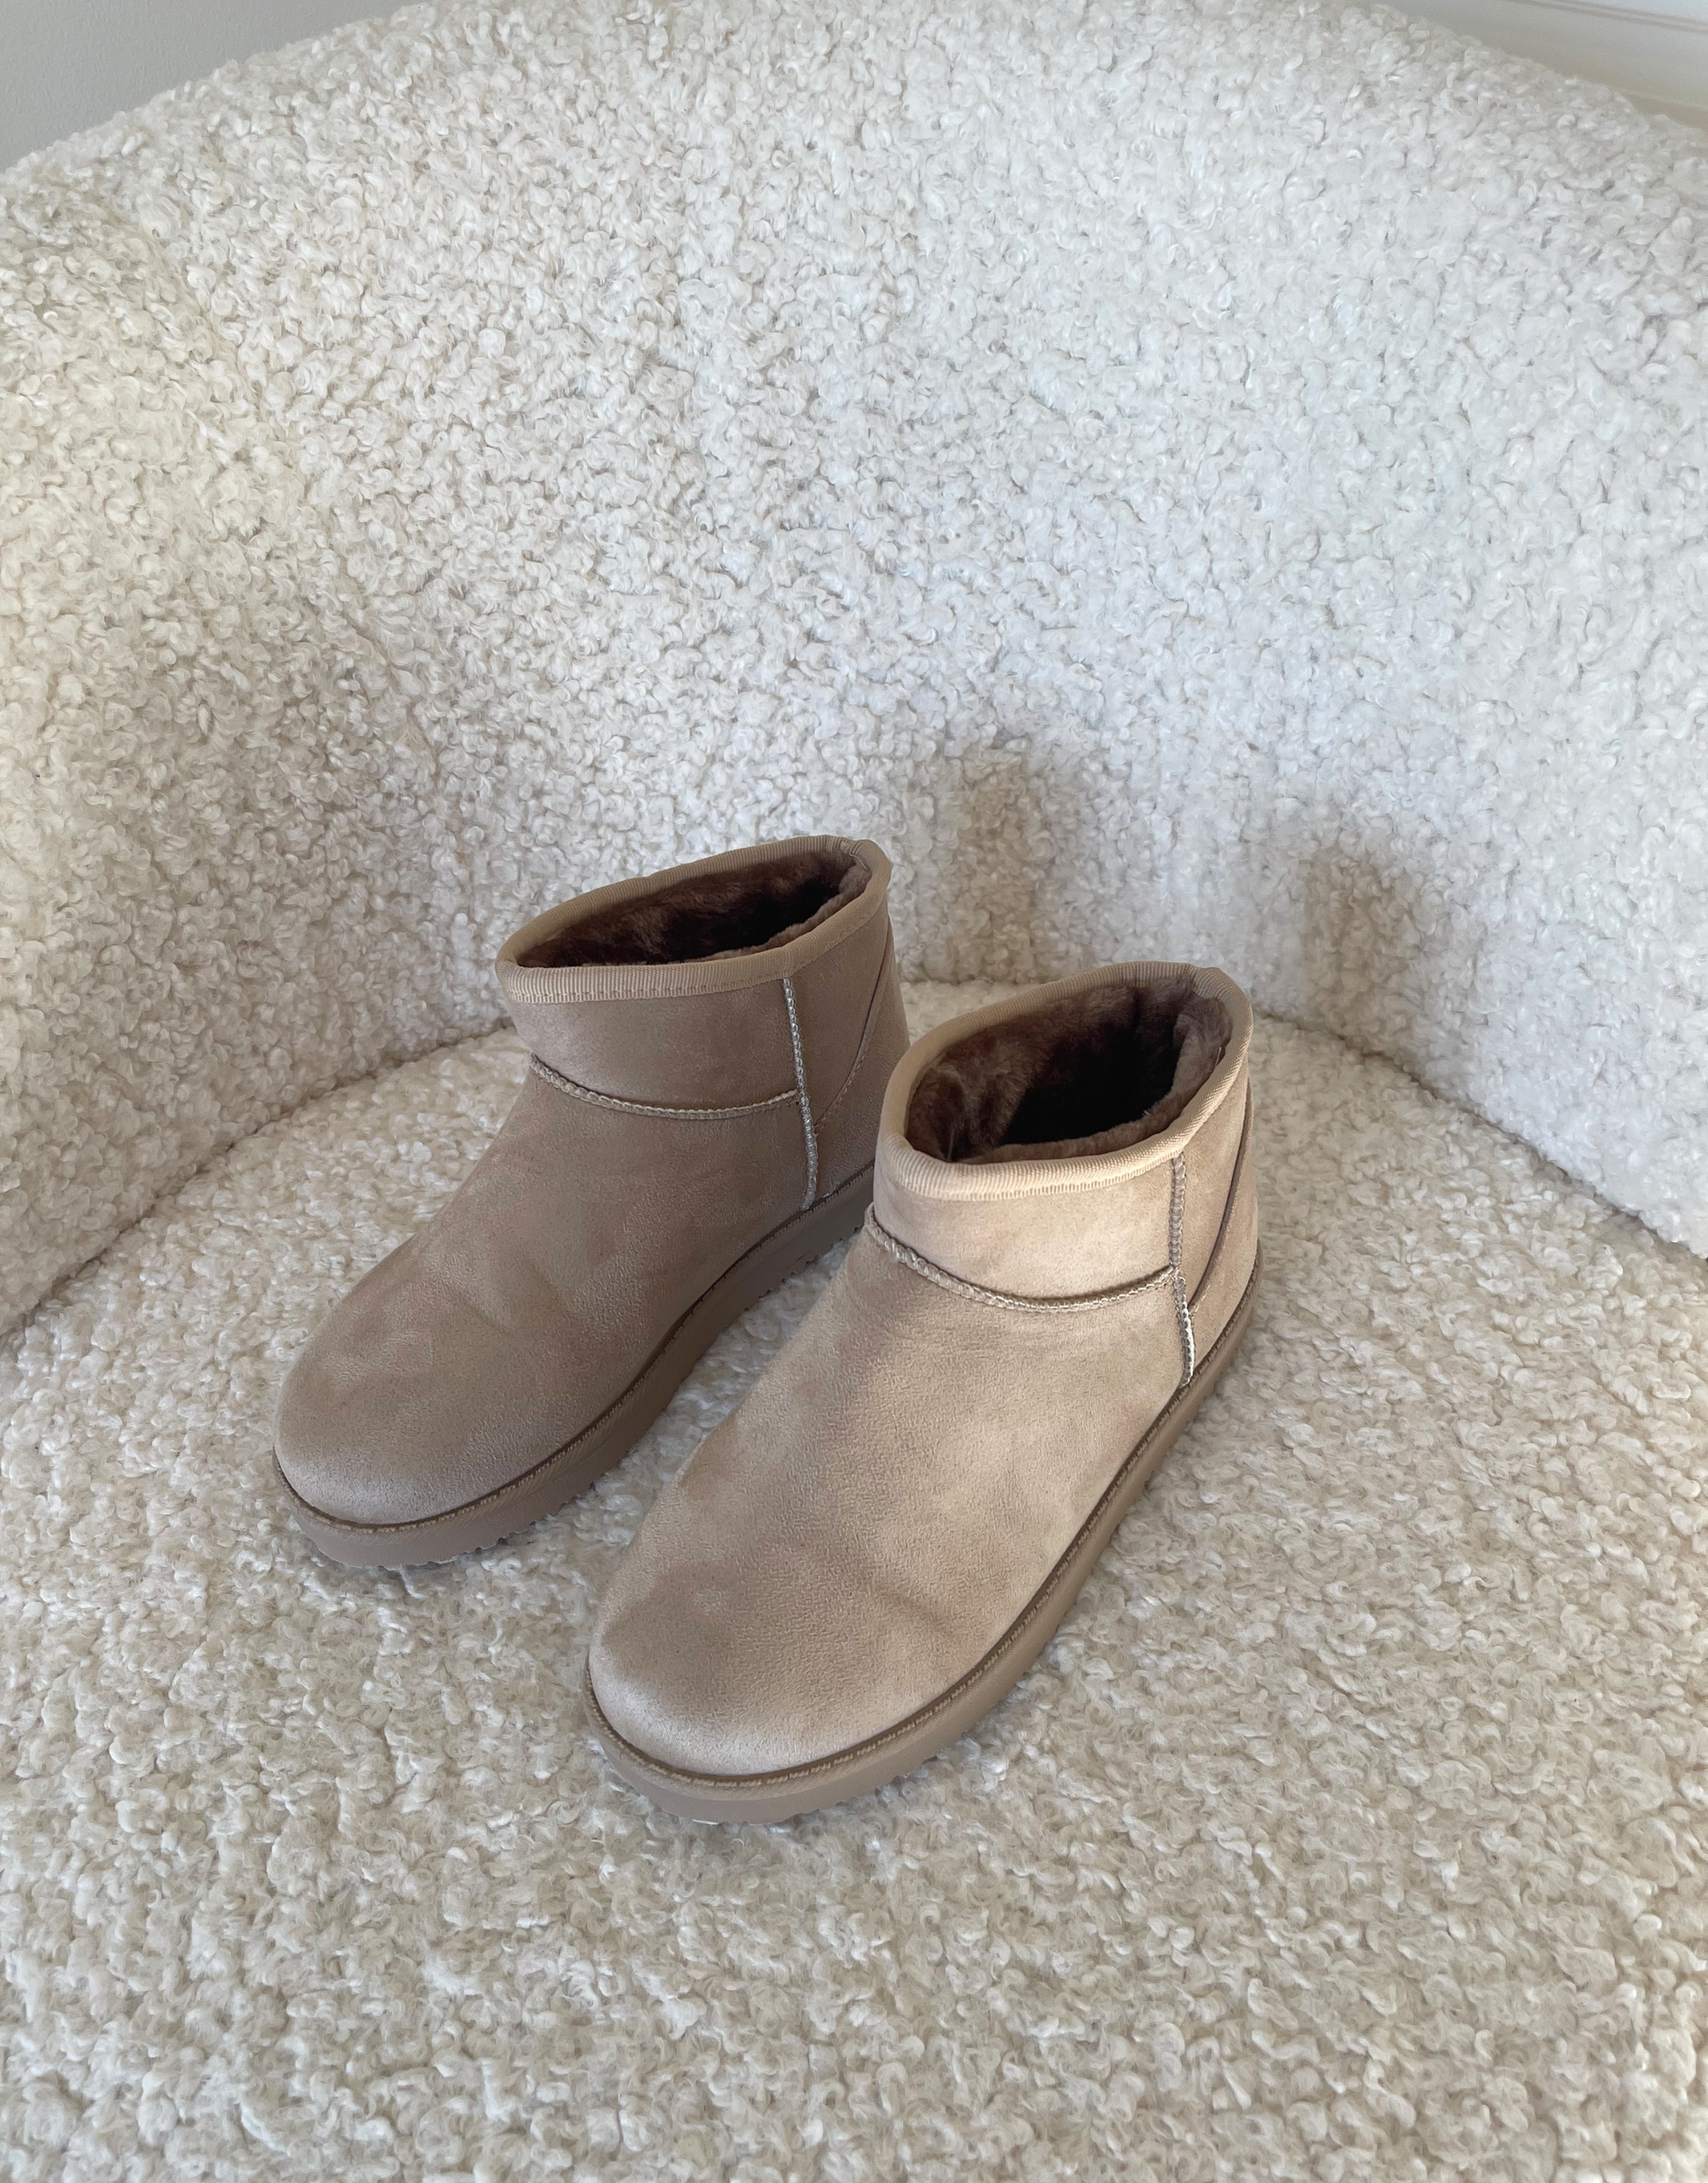 Vores Ella bamsestøvler er bløde og lækre, og er et musthave til efterårs- og vintergarderoben.  Materiale: 100% kunststof  Mål på sål: 2,5 cm Pasform: Normal til lille i størrelsen